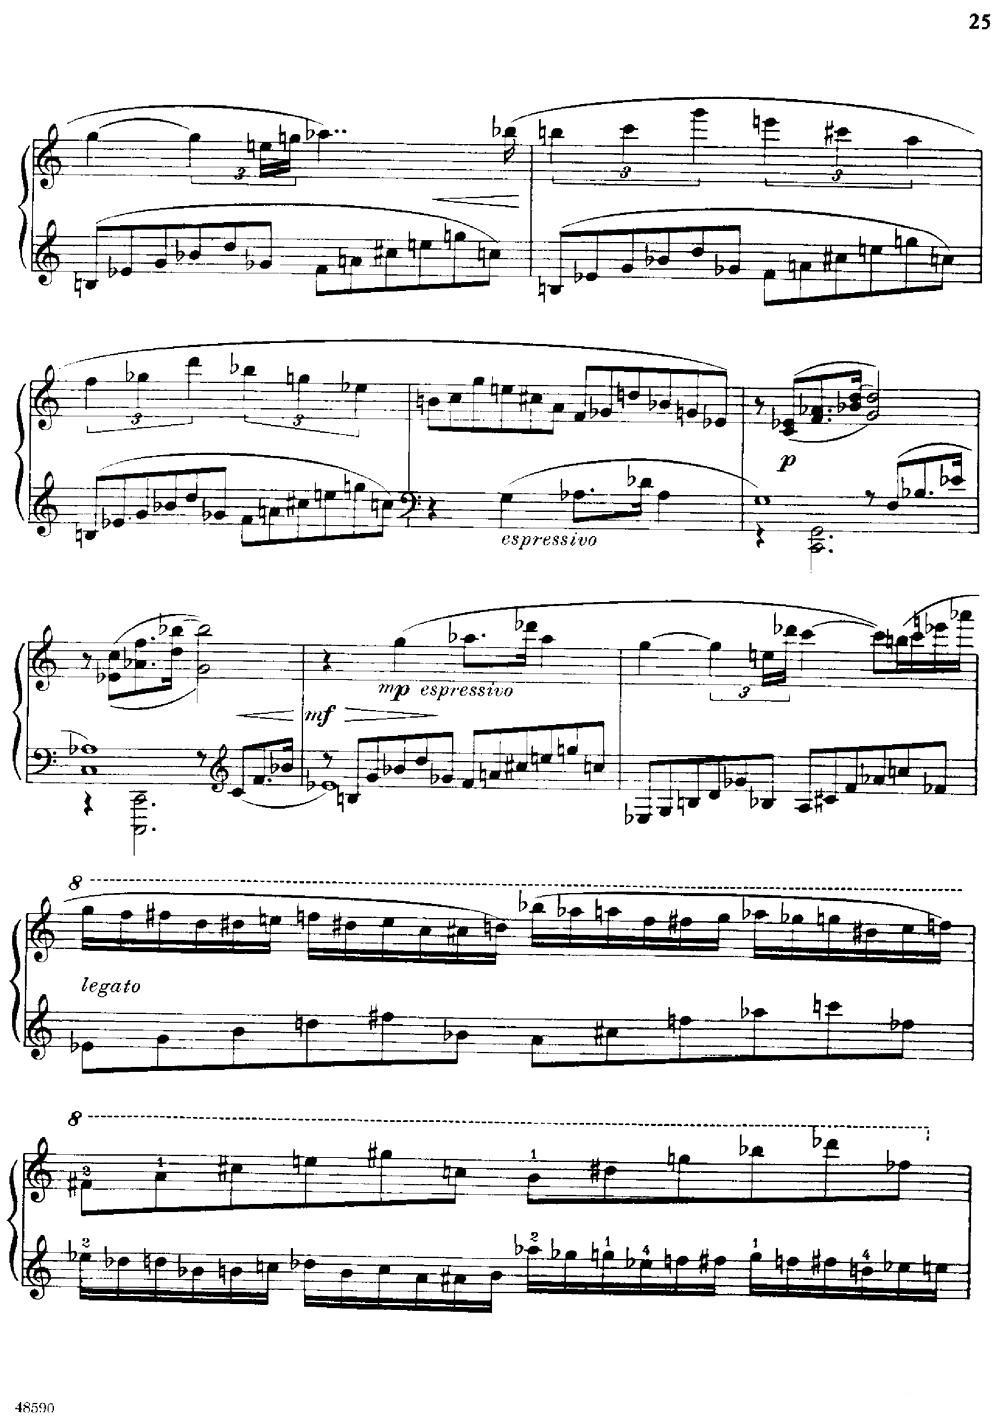 《降e小调钢琴奏鸣曲 Op.26 v.1》钢琴曲谱图分享